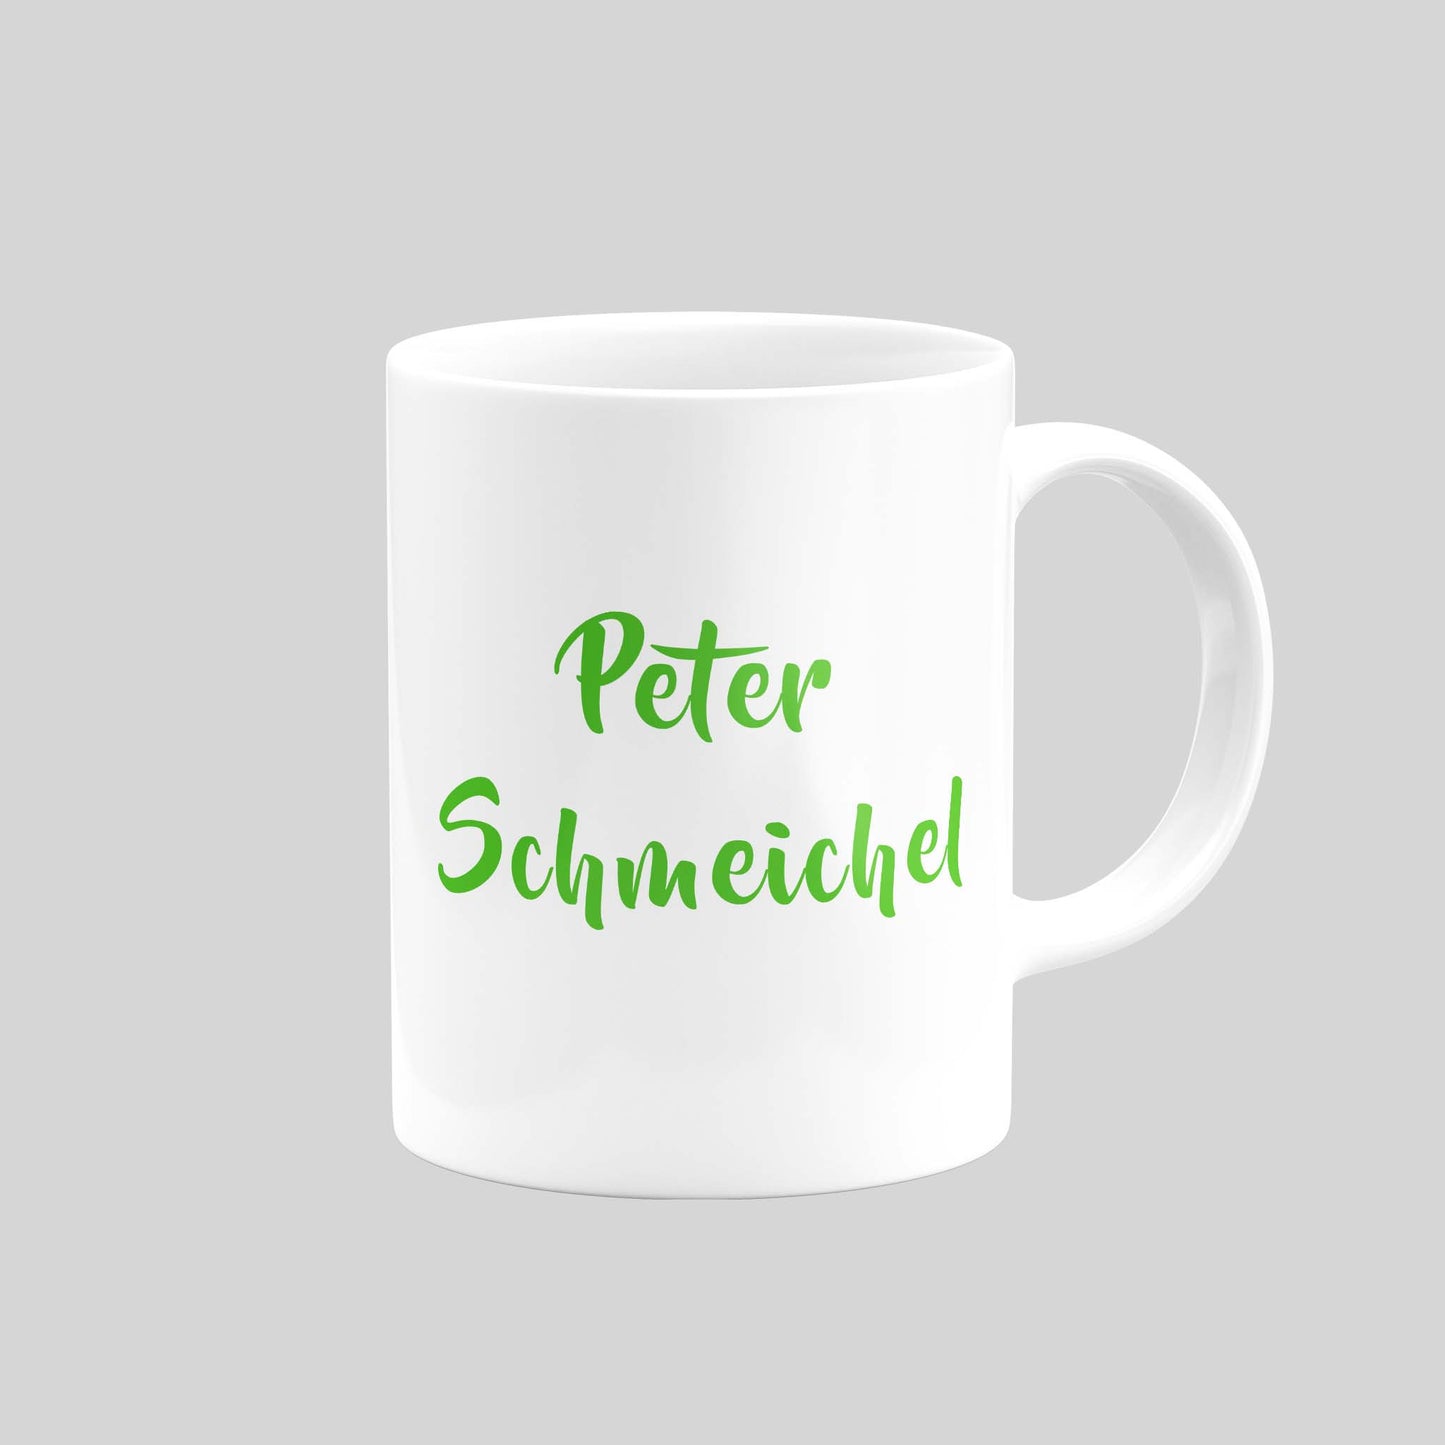 Peter Schmeichel Mug